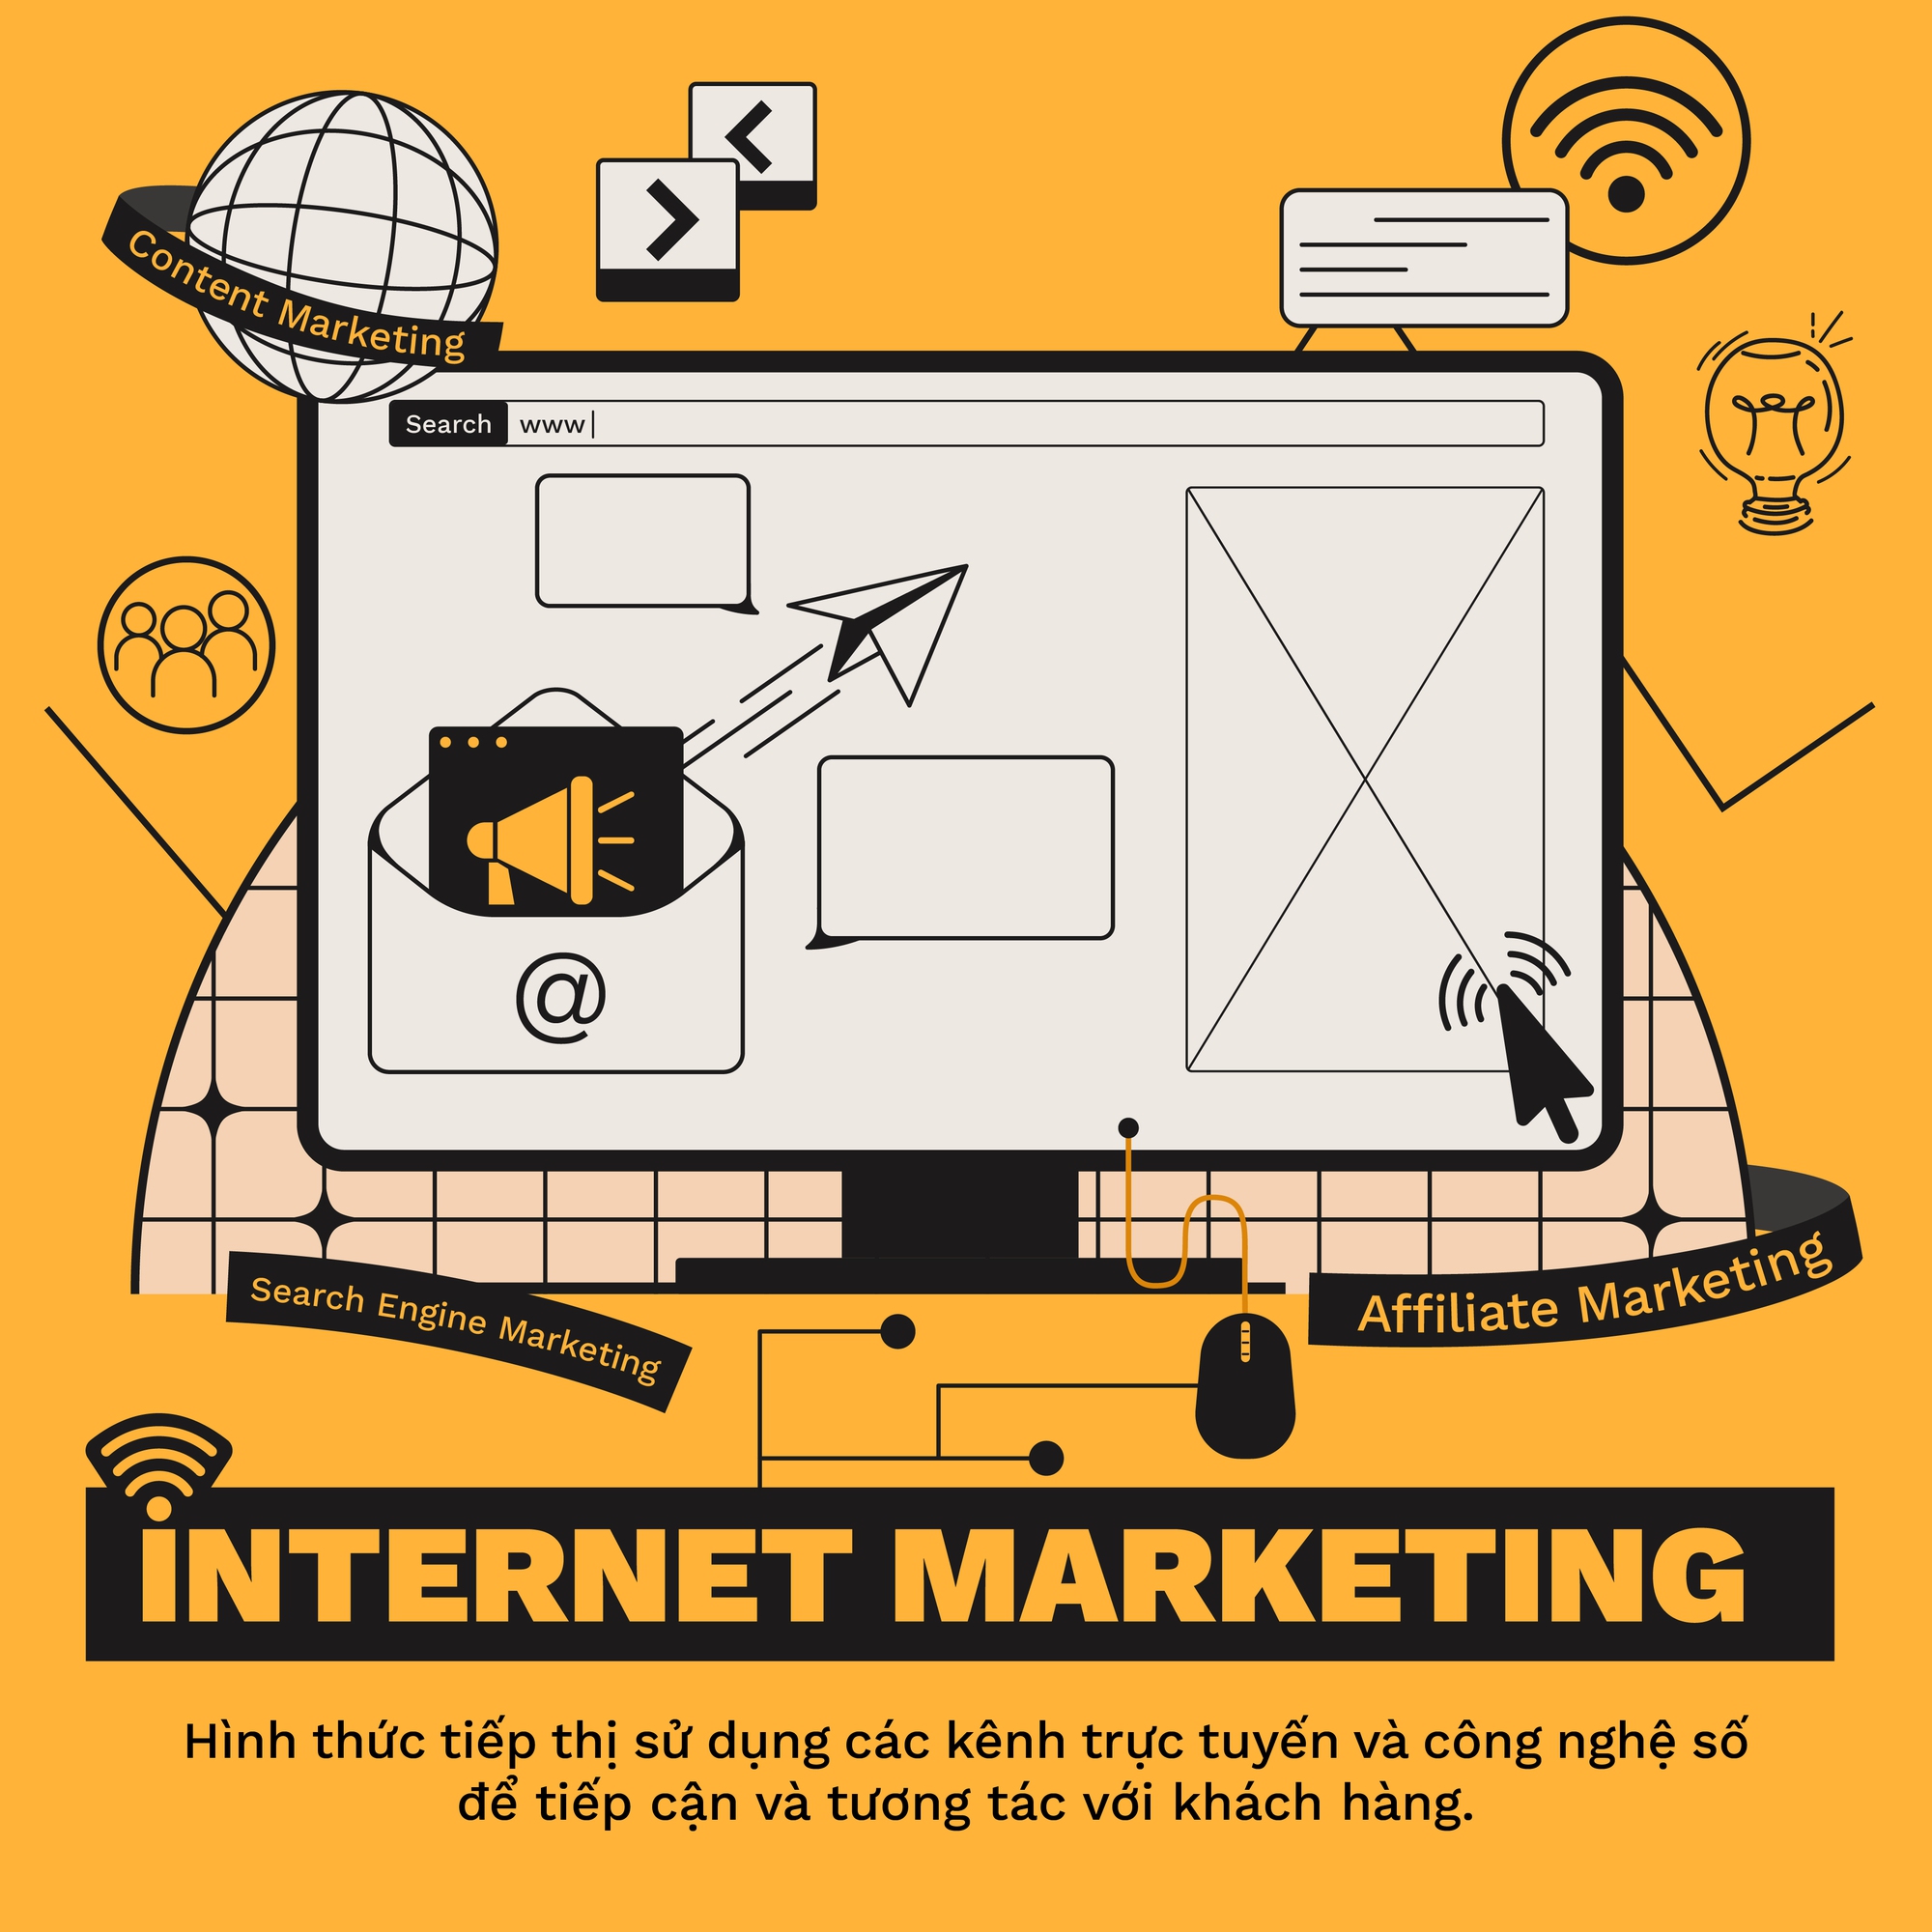 Internet marketing là gì